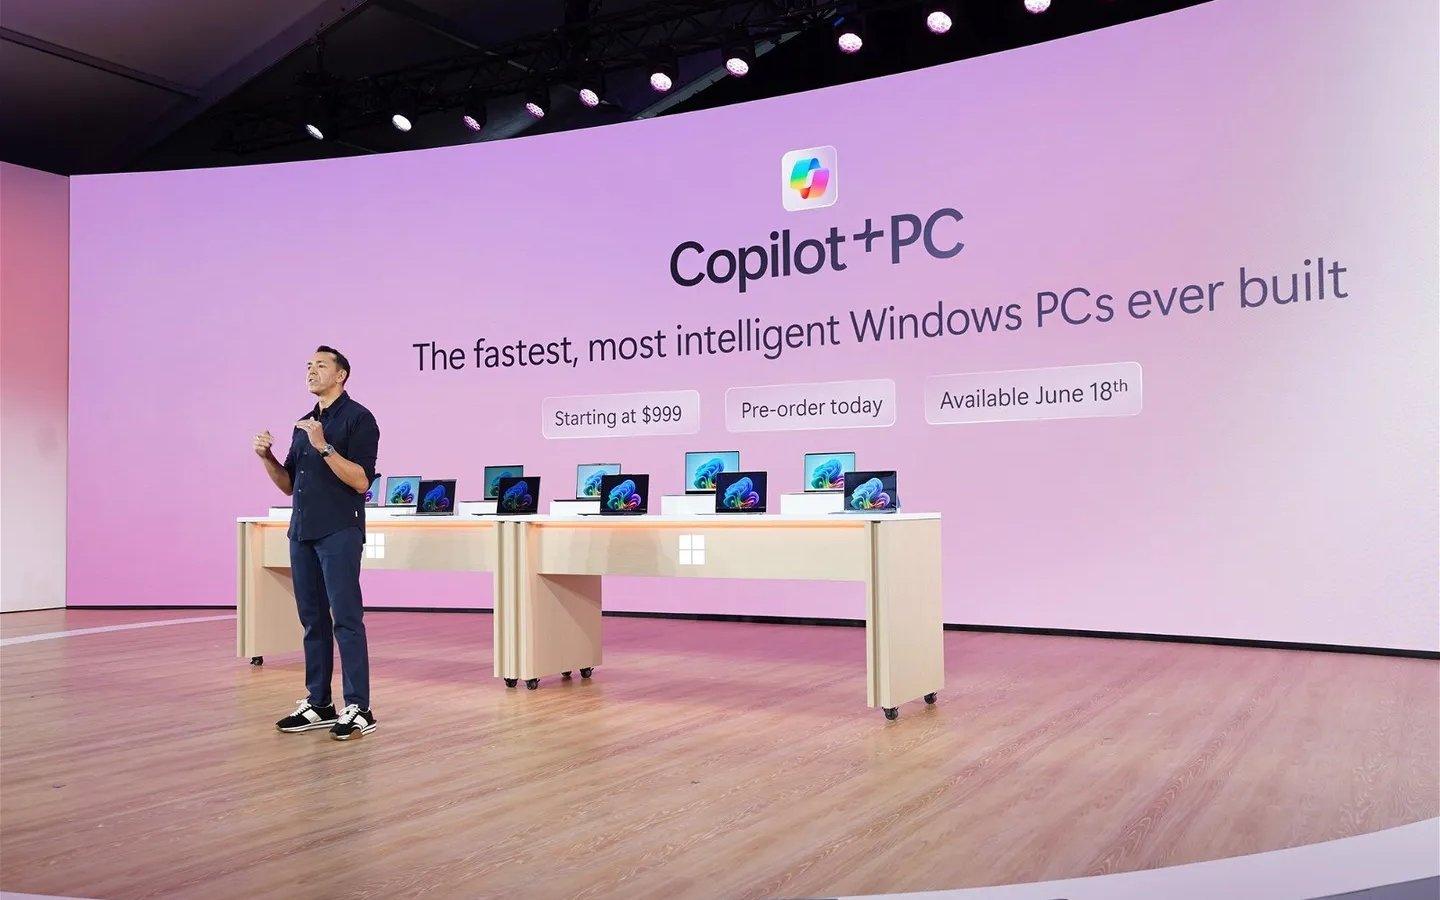 La presentazione di Microsoft sui nuovi Copilot+ PC